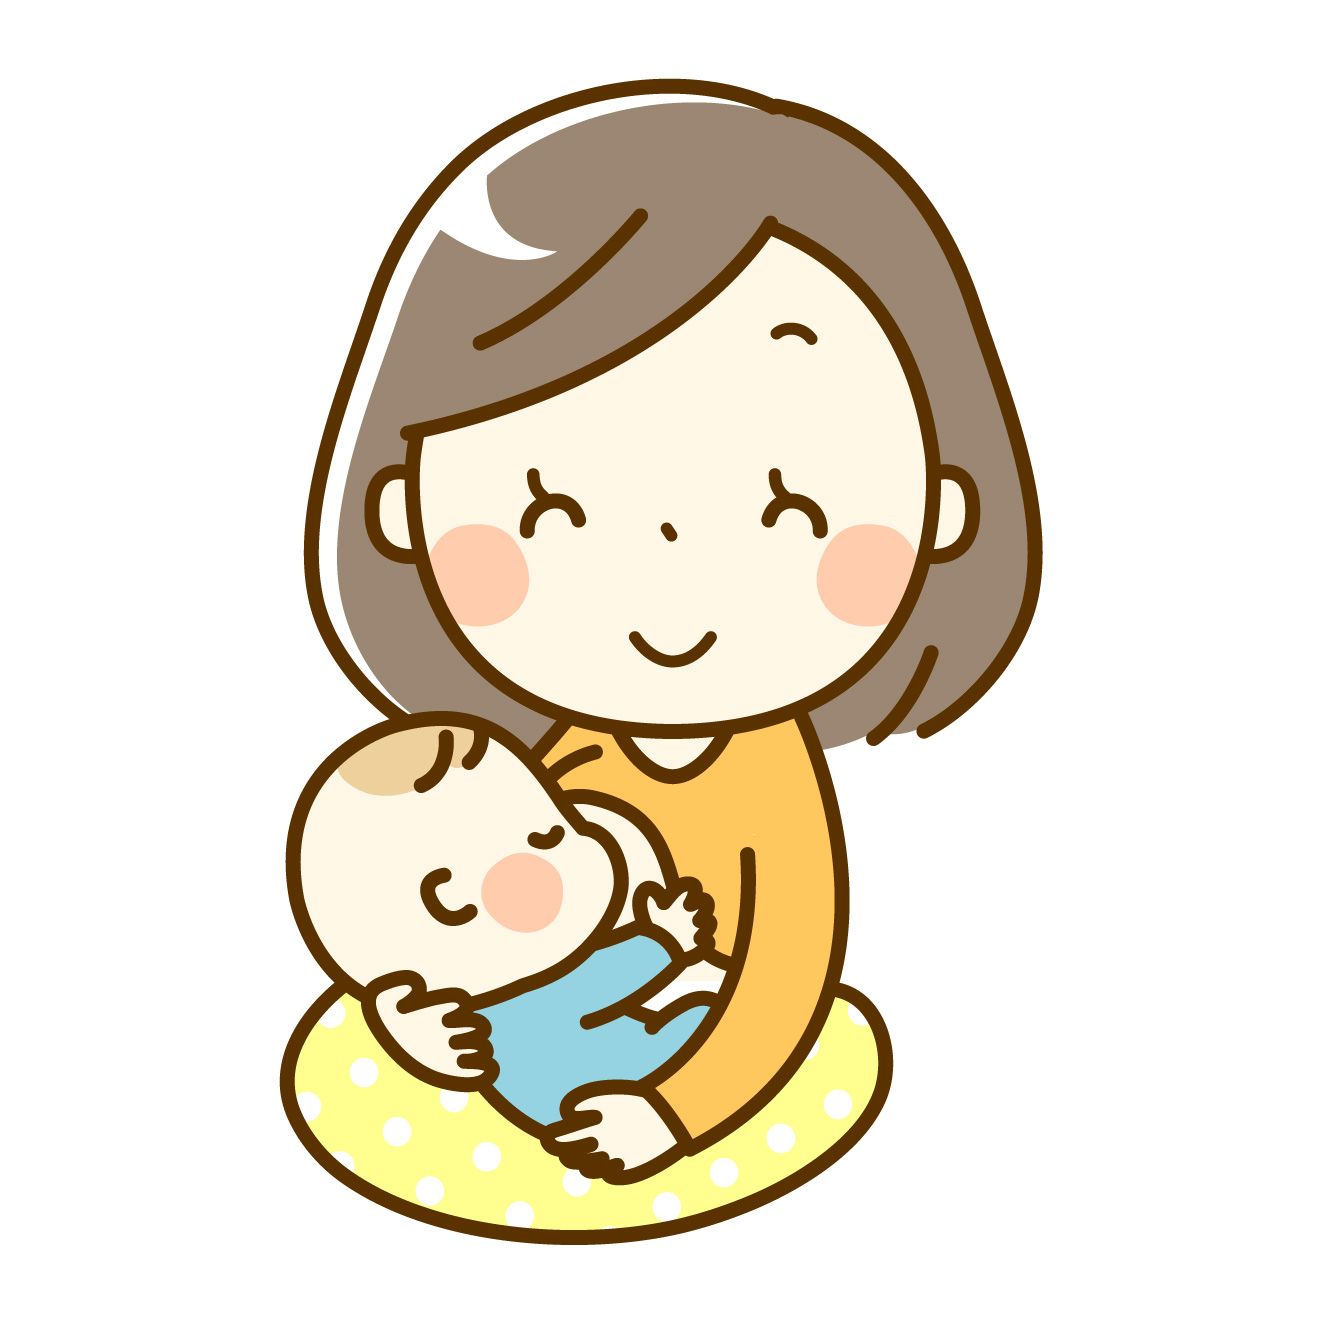 石井廣重先生の母乳育児のお話し会